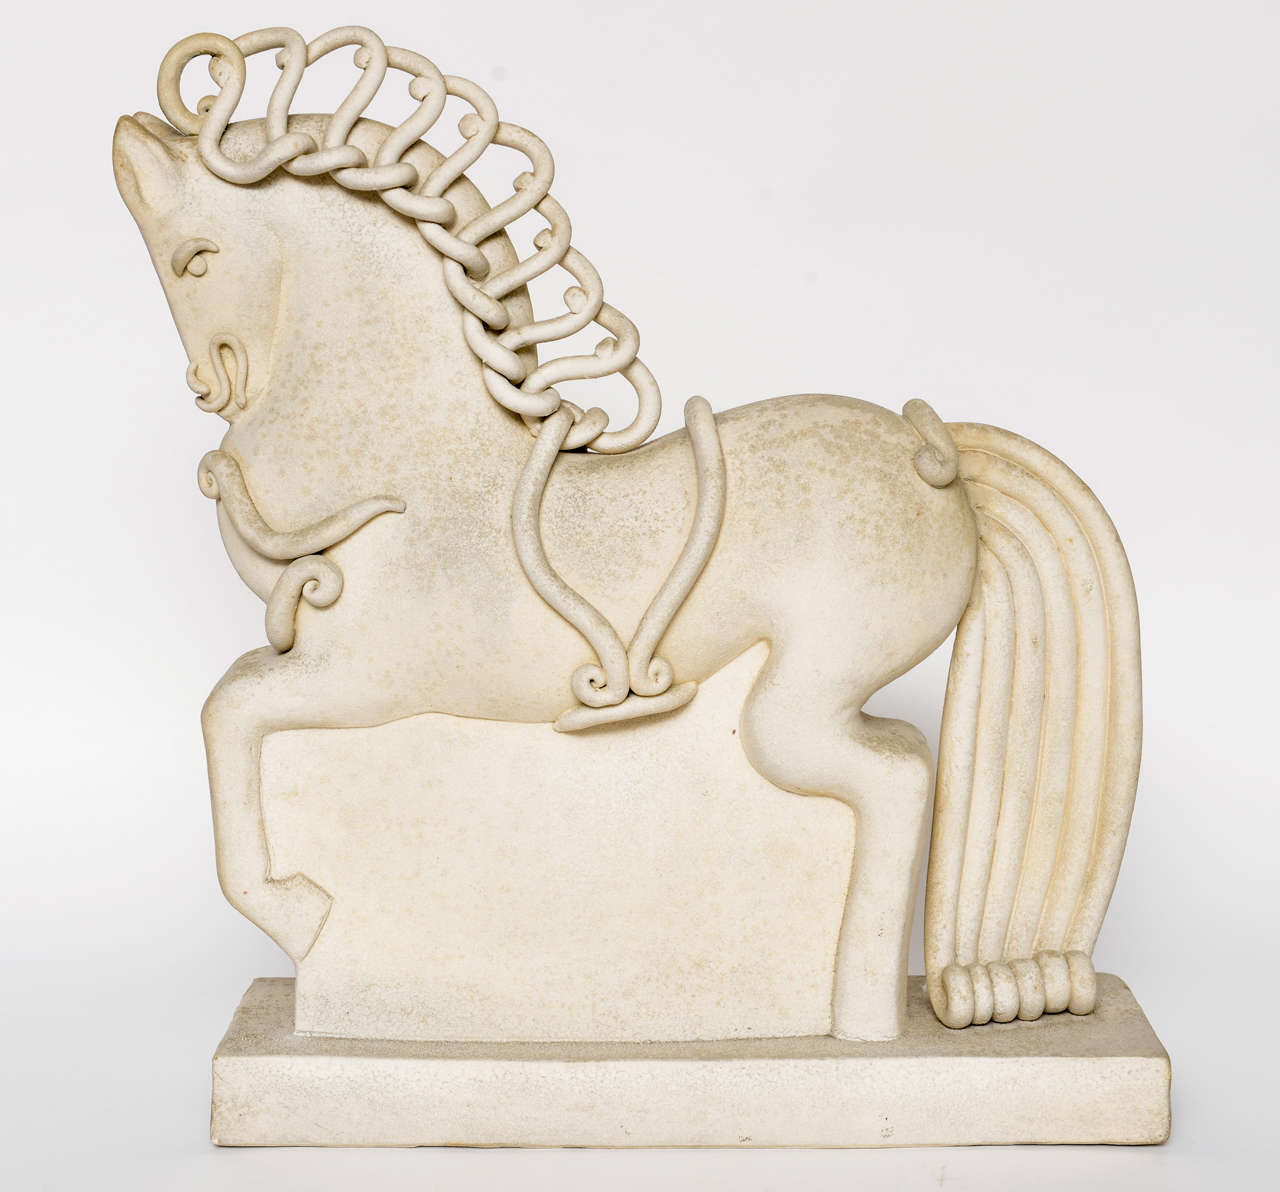 Mid-20th Century Italian Ceramic Horse by Colette Guedin for Primavera